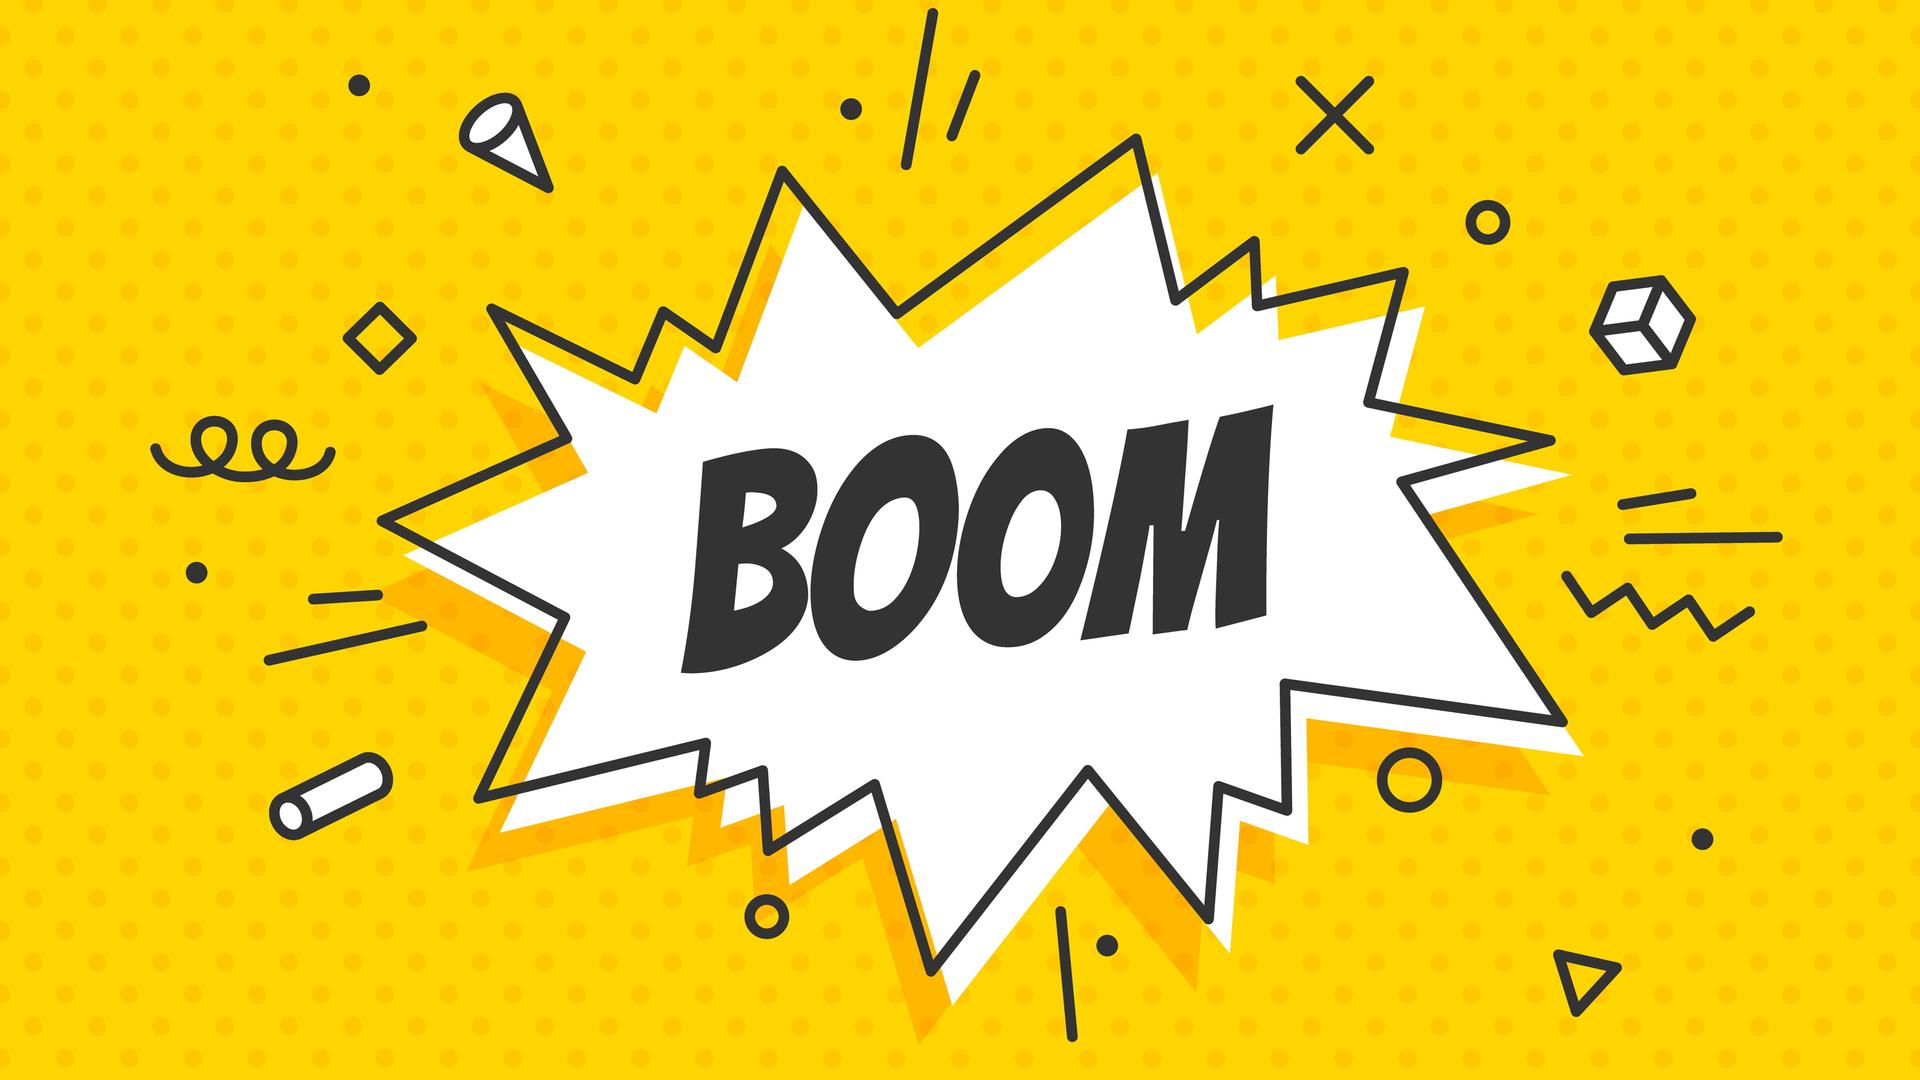 Eine zackige Sprechblase mit der Schrift "Boom" auf gelbem Grund